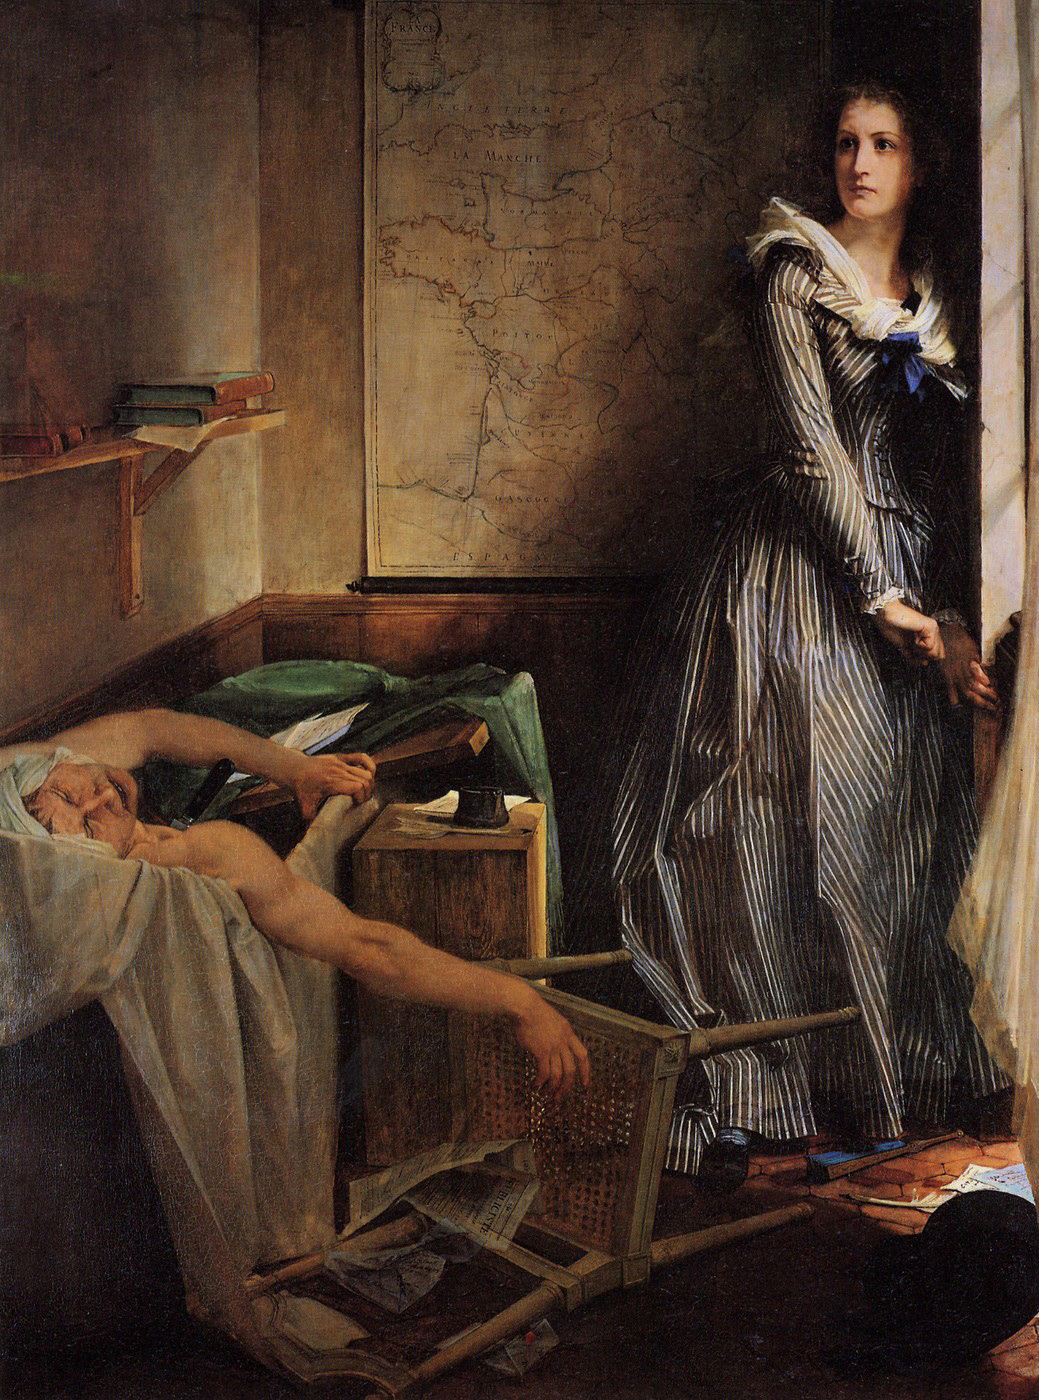 Charlotte Corday by Paul Baudry - 1860 - 203 x 154 cm Musée des Beaux-Arts de Nancy